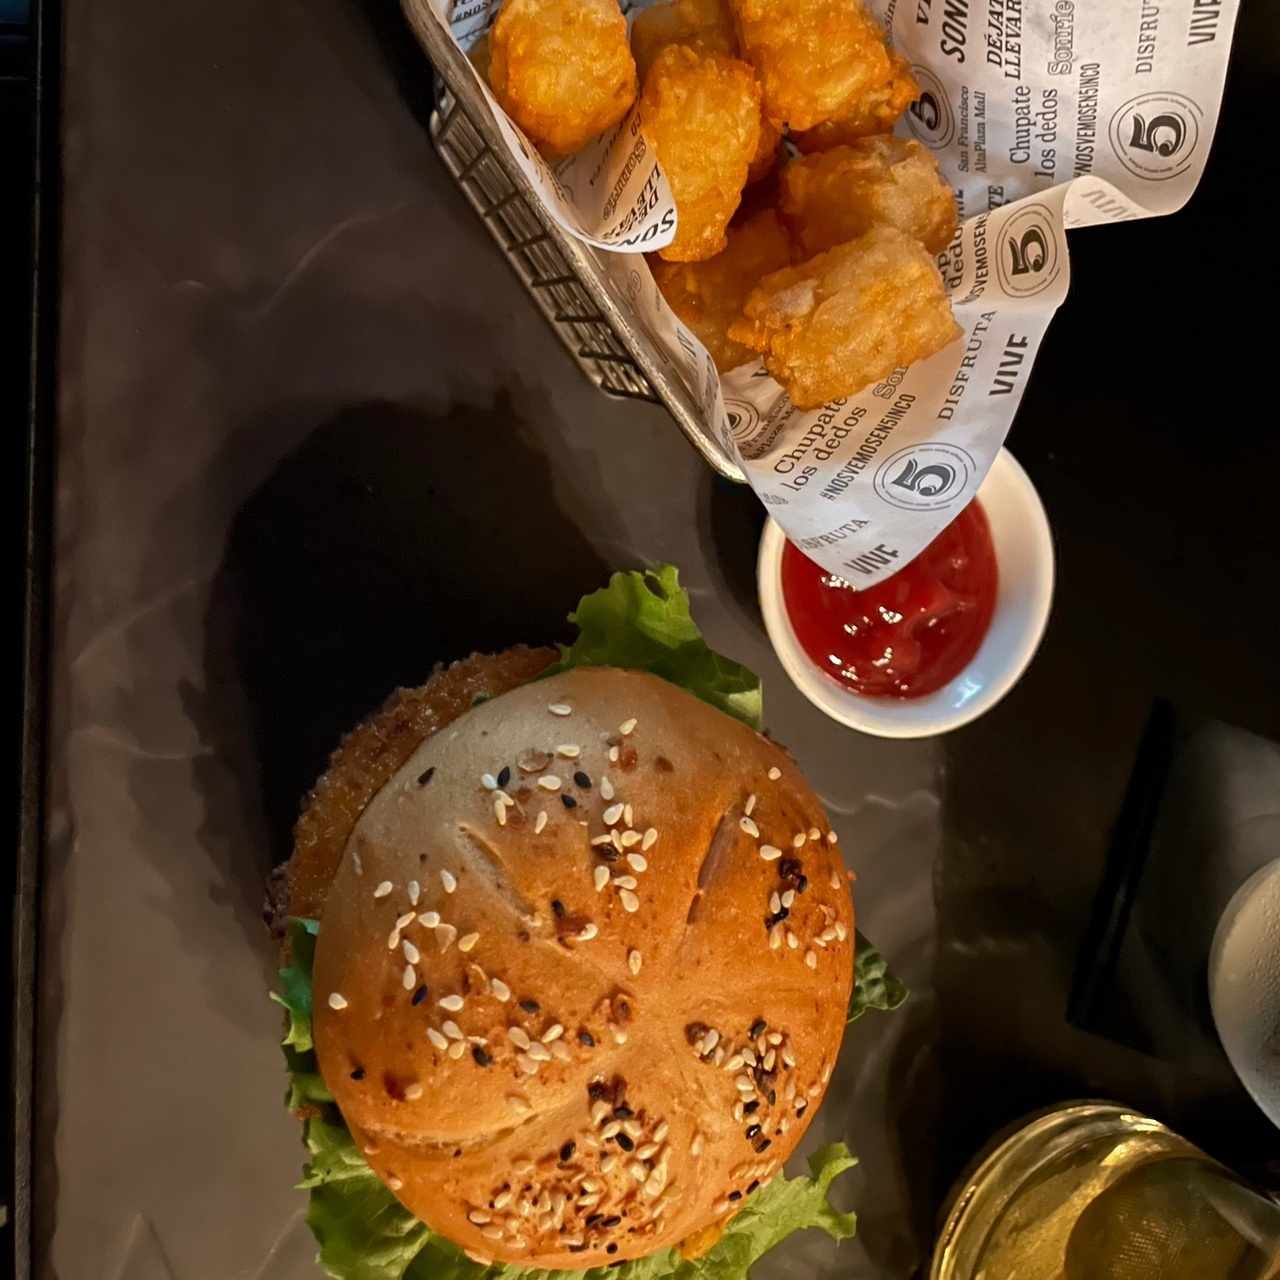 Hamburguesa (unica del menú)